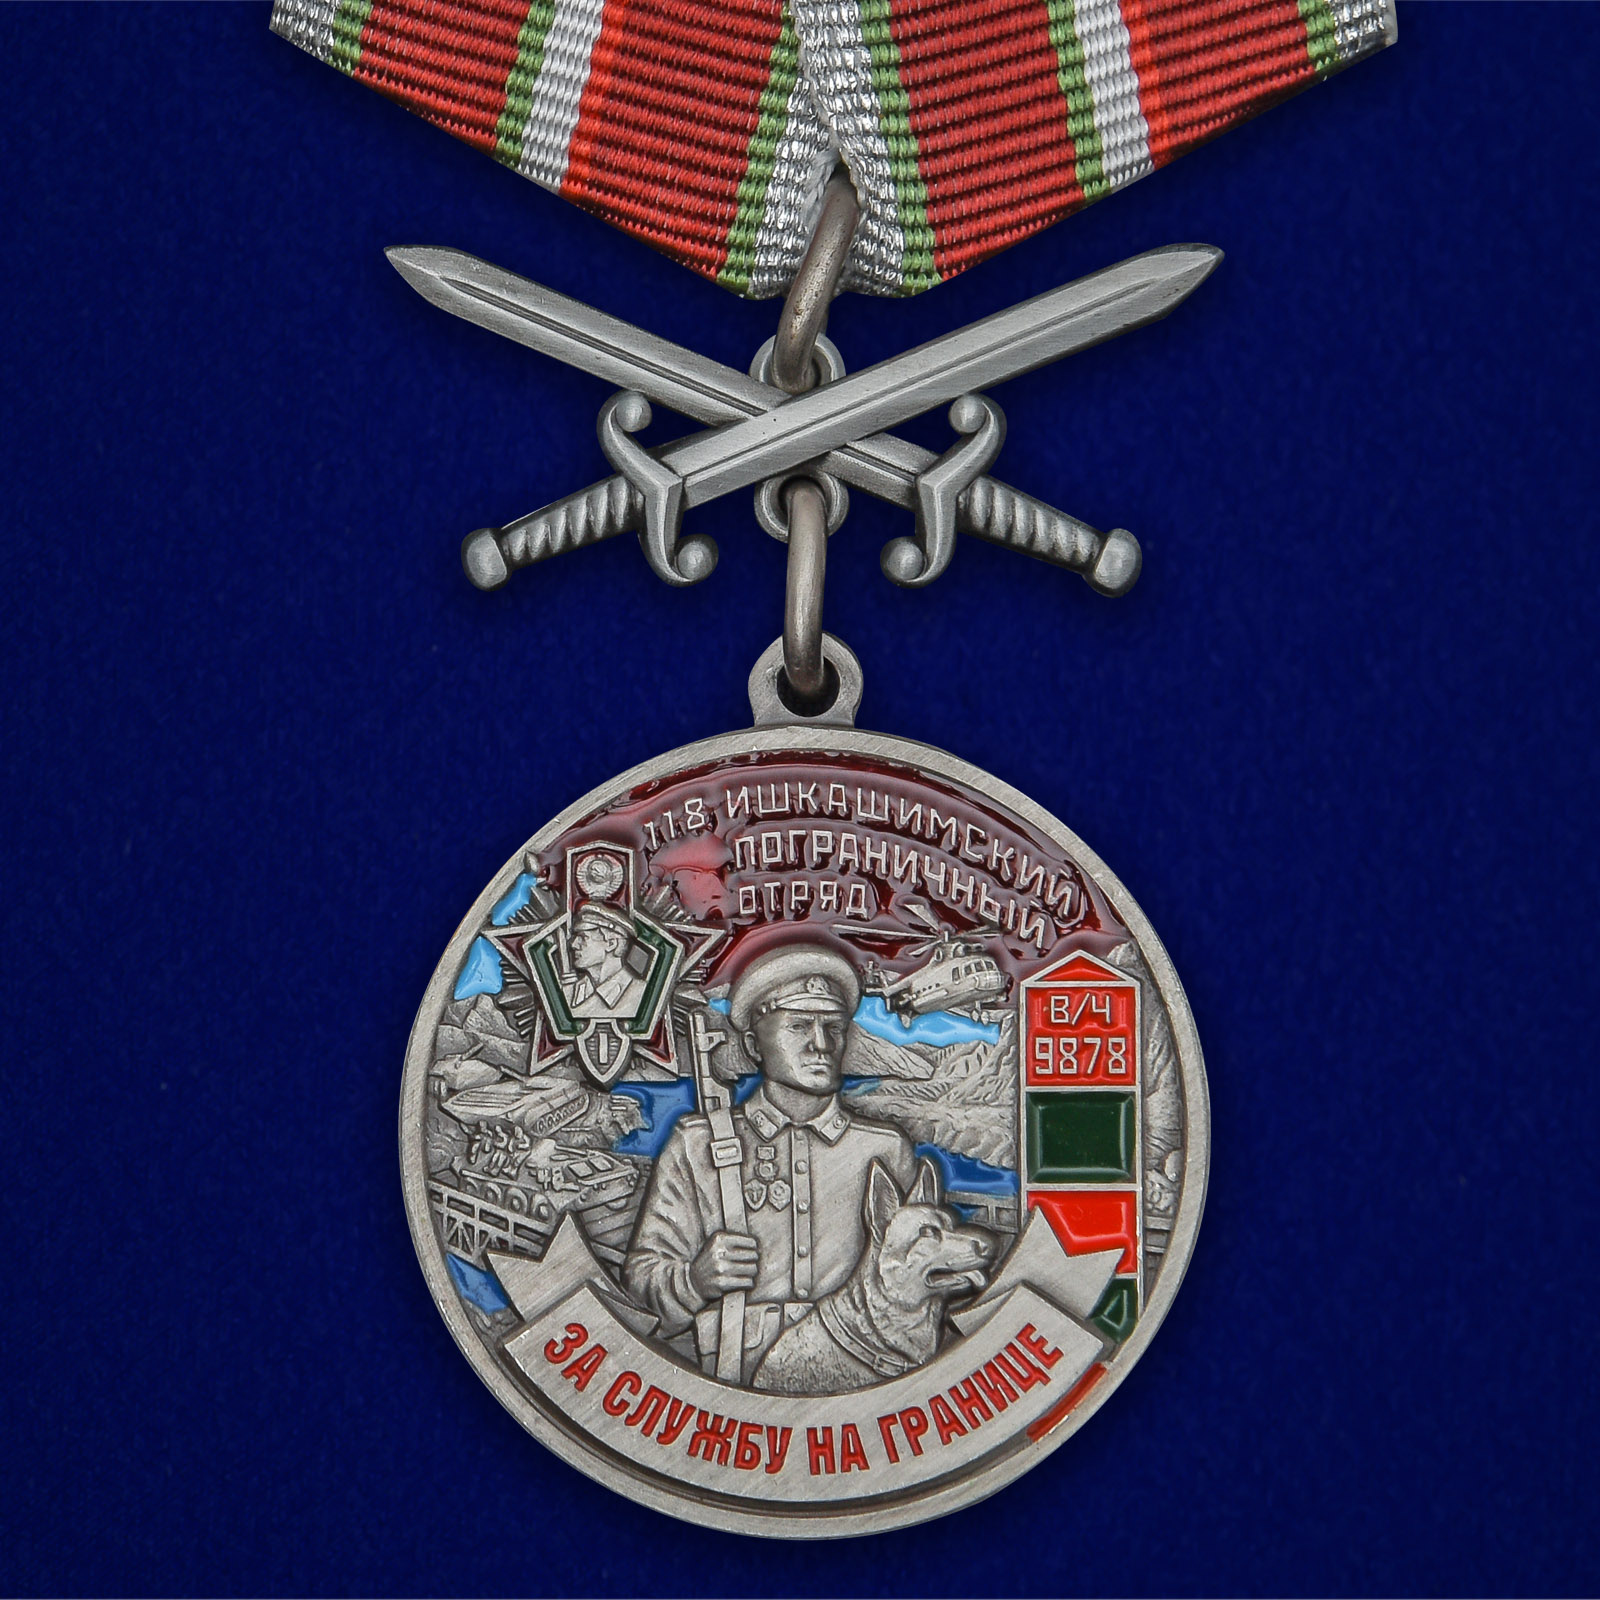 Купить медаль За службу в Ишкашимском пограничном отряде на подставке онлайн